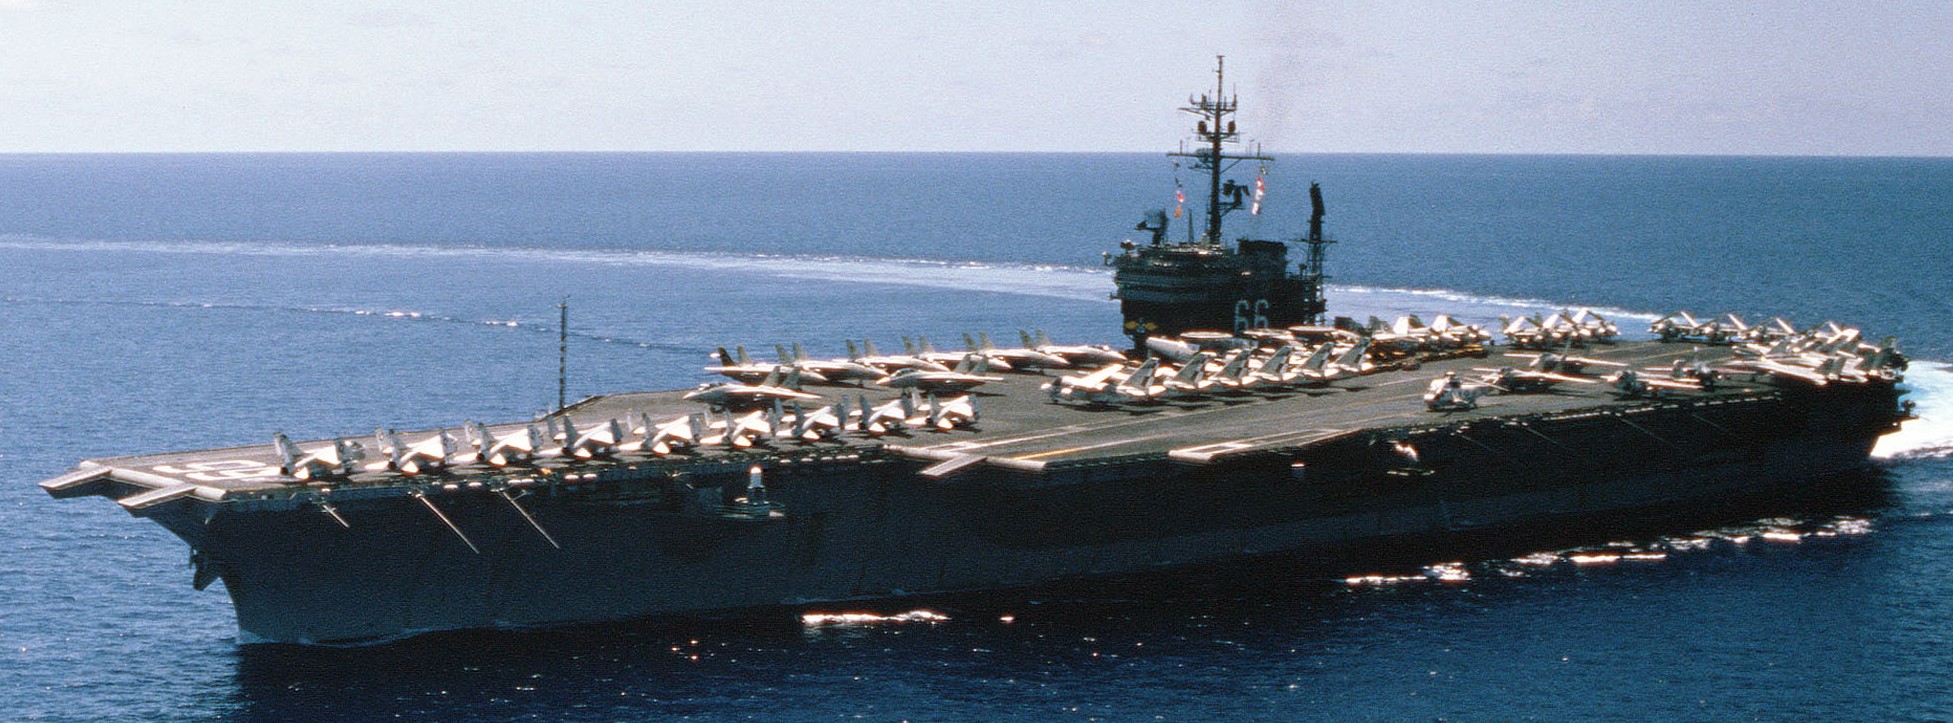 cv-66 uss america kitty hawk class aircraft carrier air wing cvw-1 us navy 50